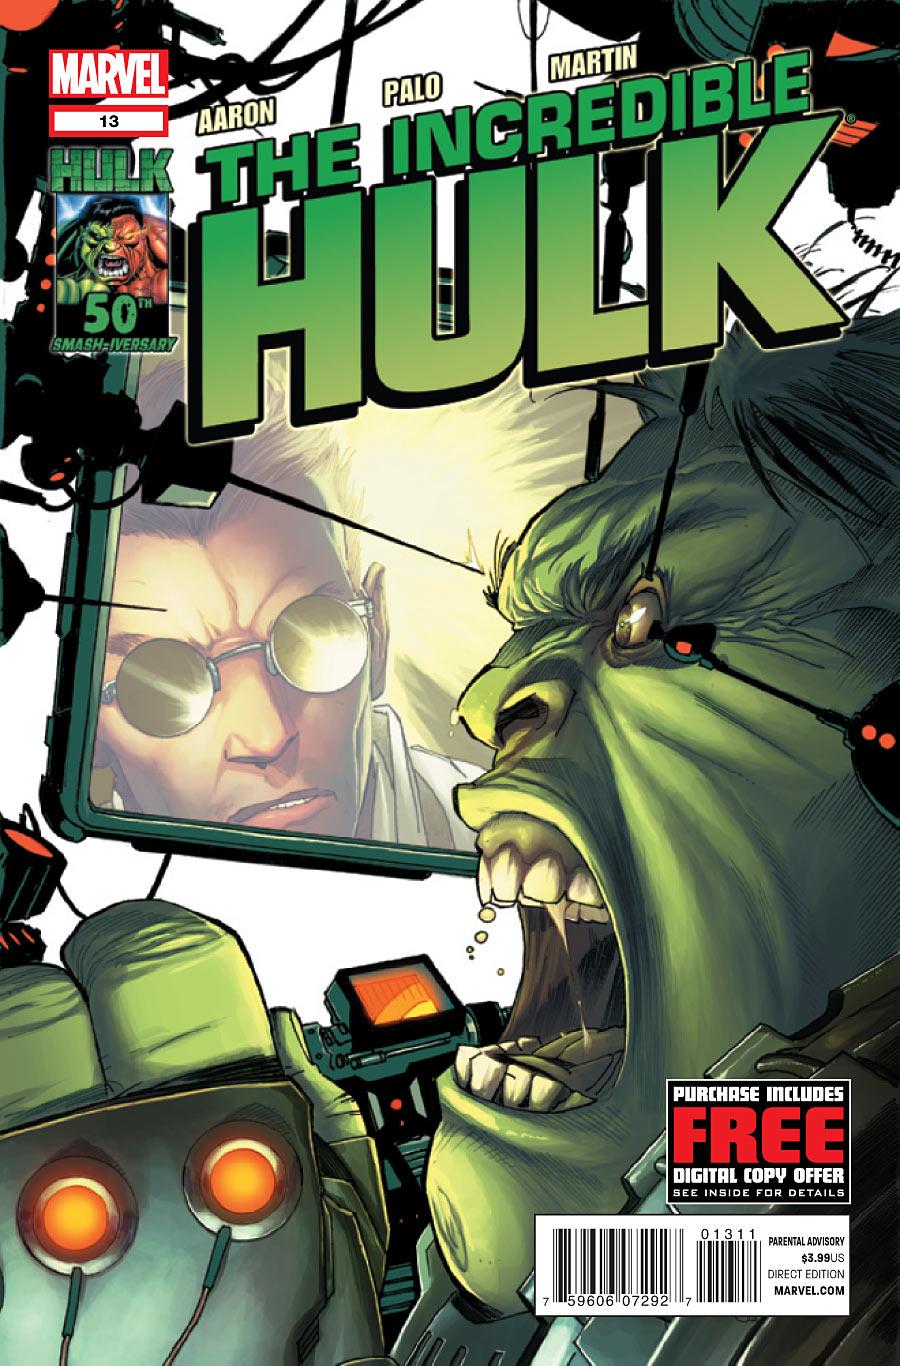 The Incredible Hulk Vol. 3 #13